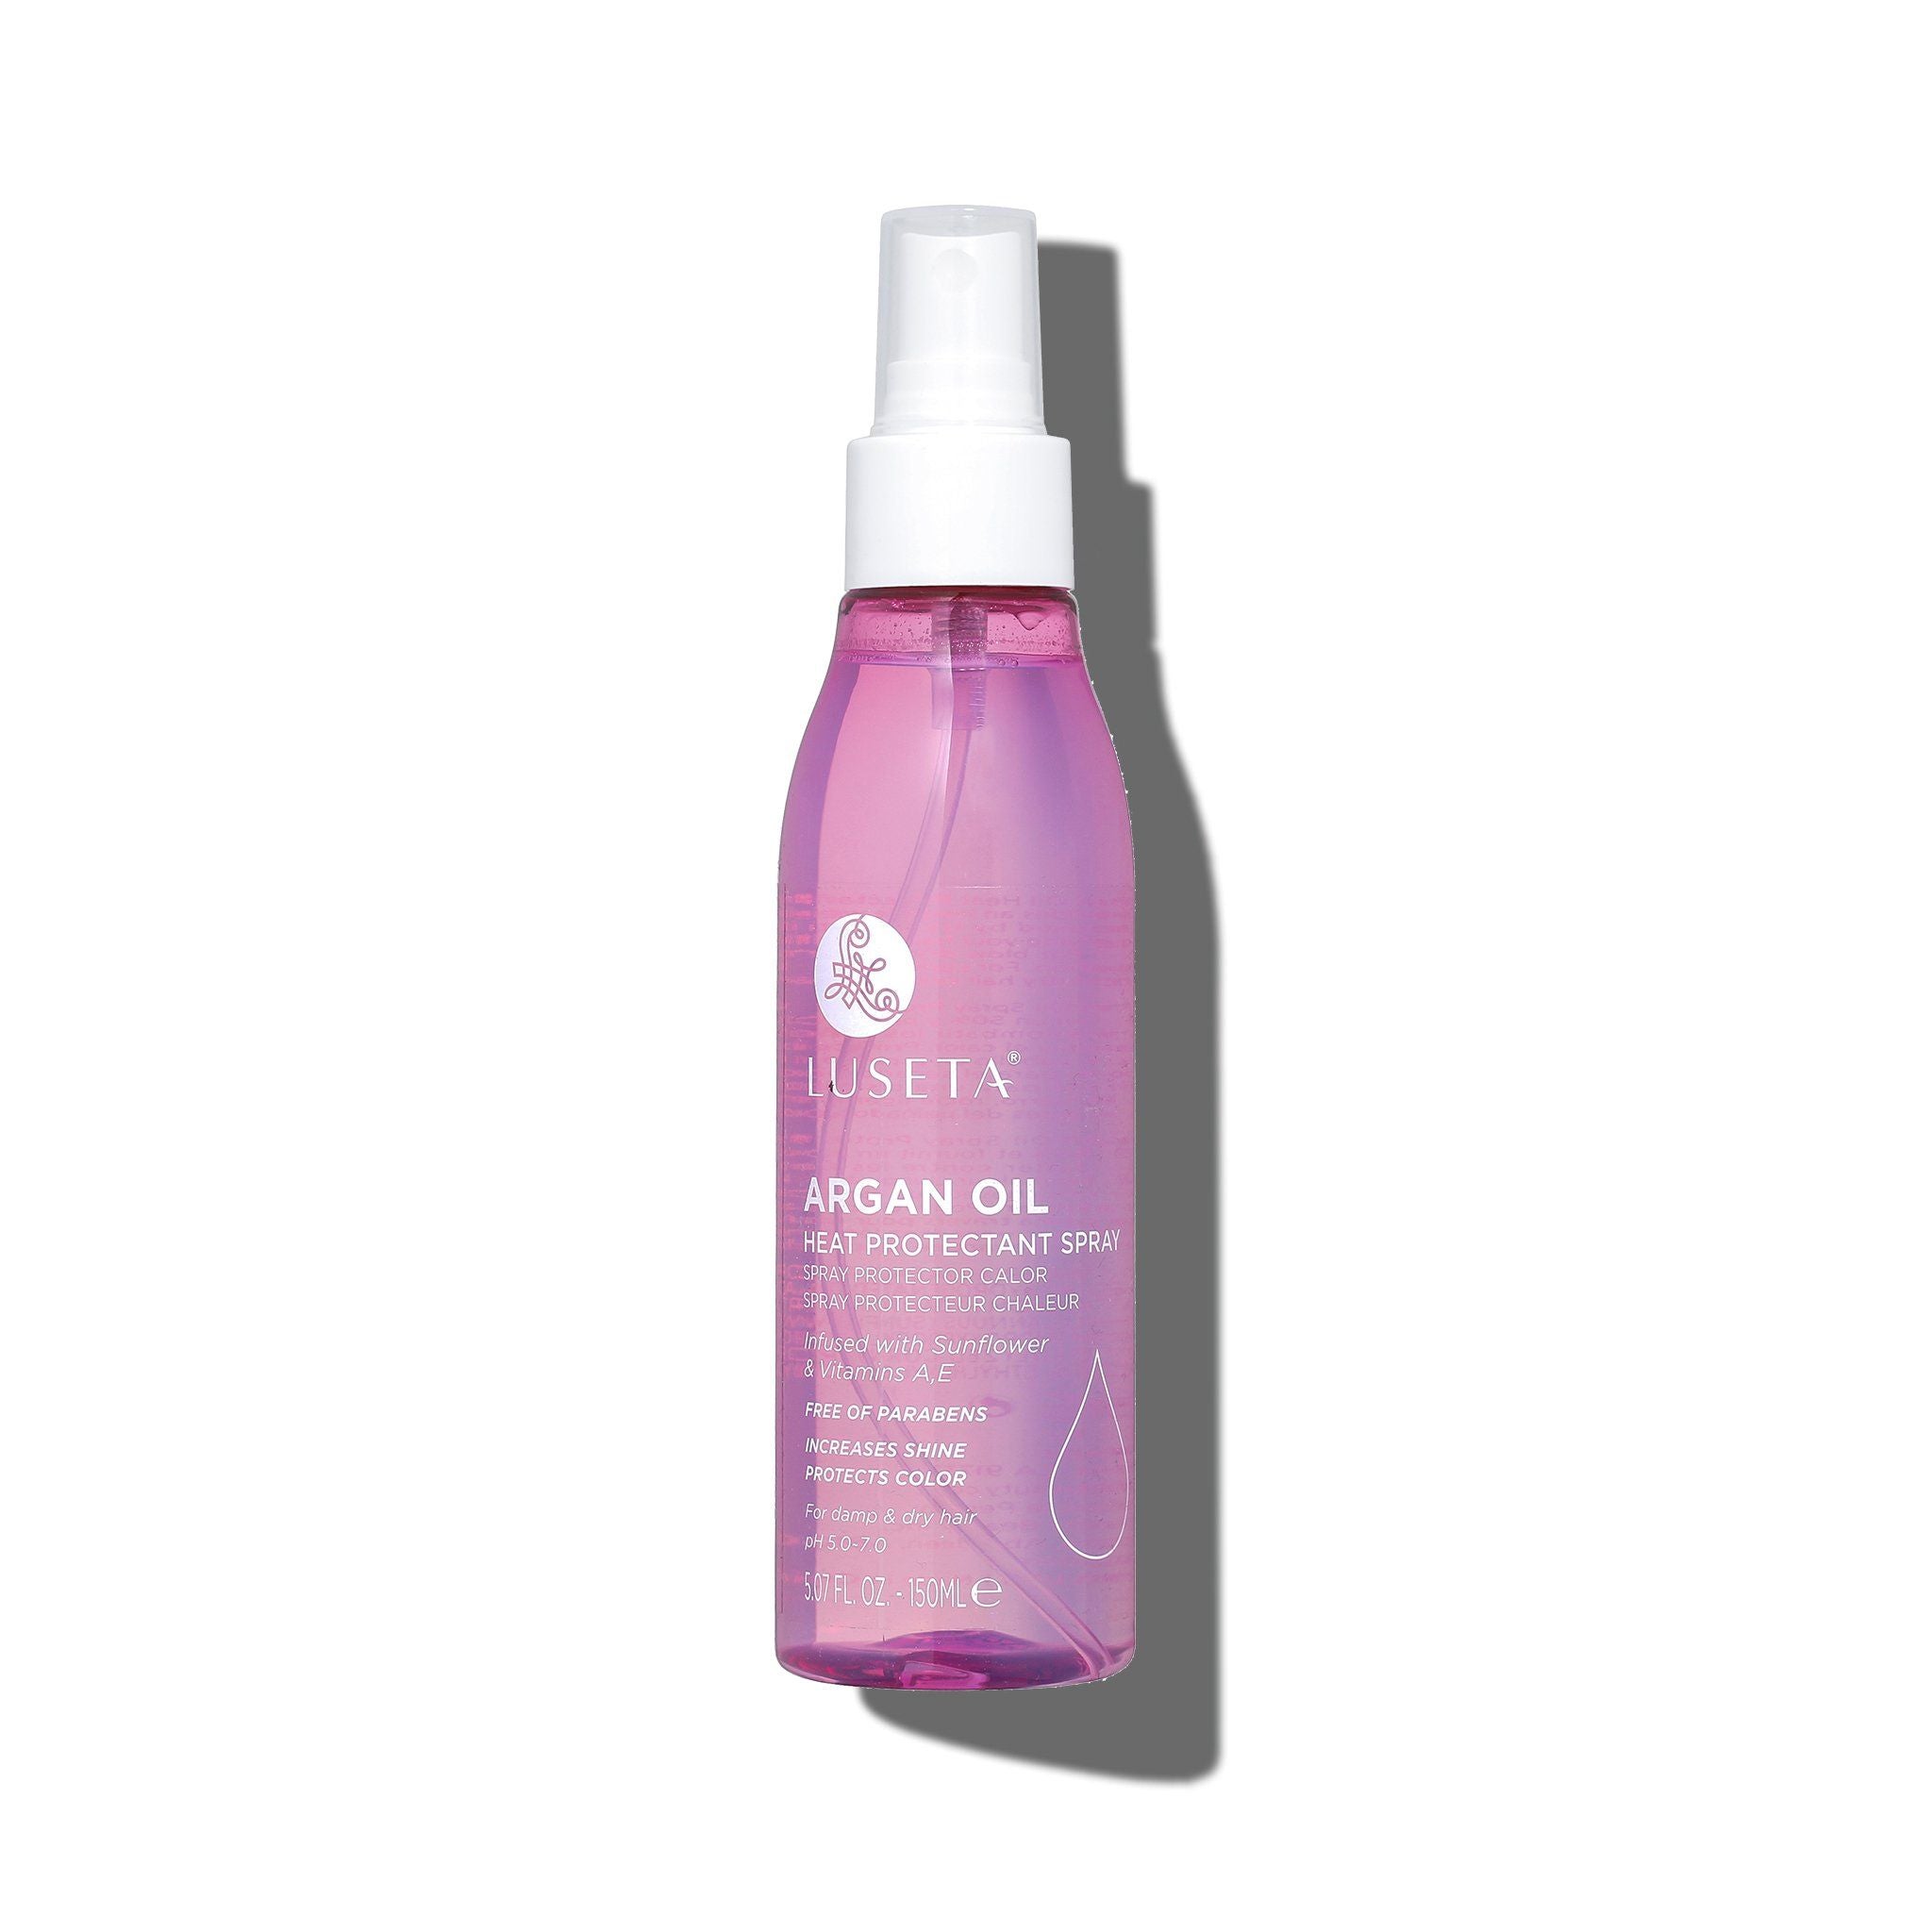 Argan Oil Heat Protectant Spray (8.5oz) by Luseta Beauty